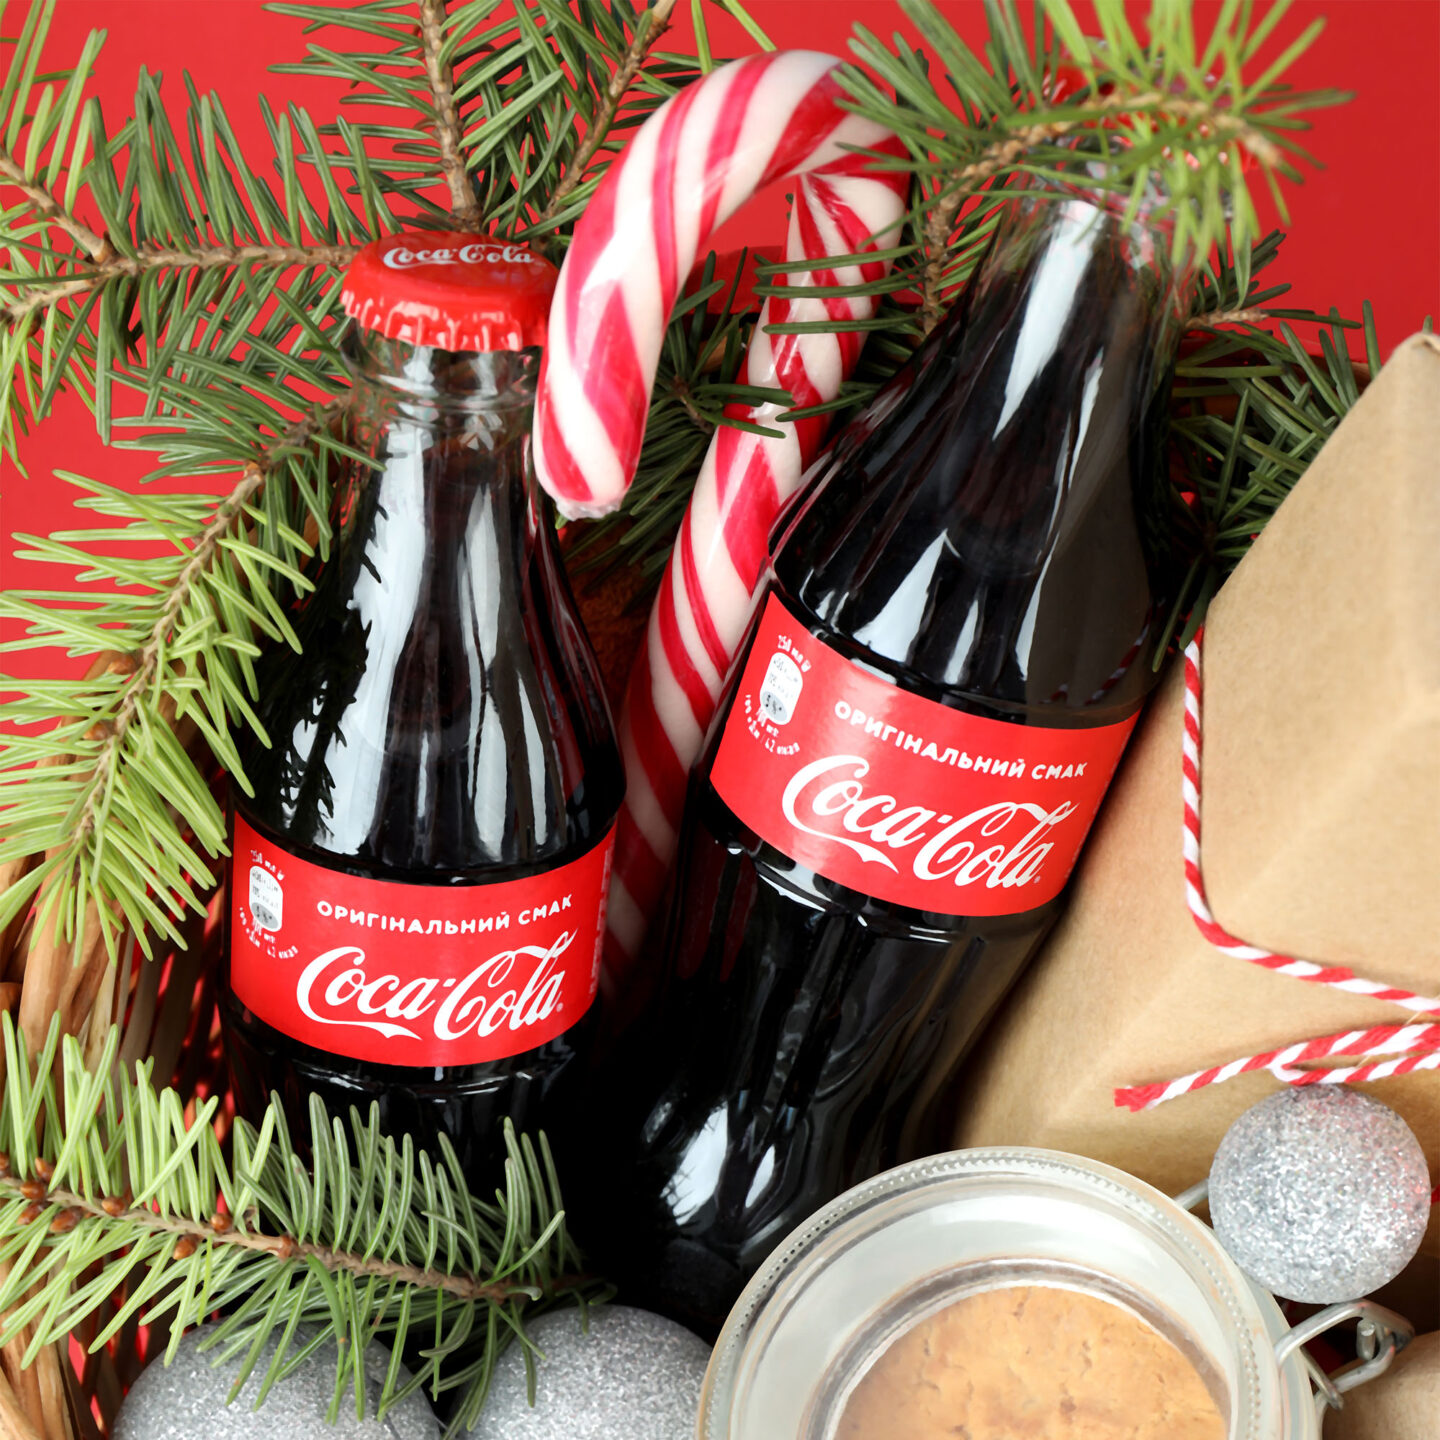 coca cola bottles in a gift basket